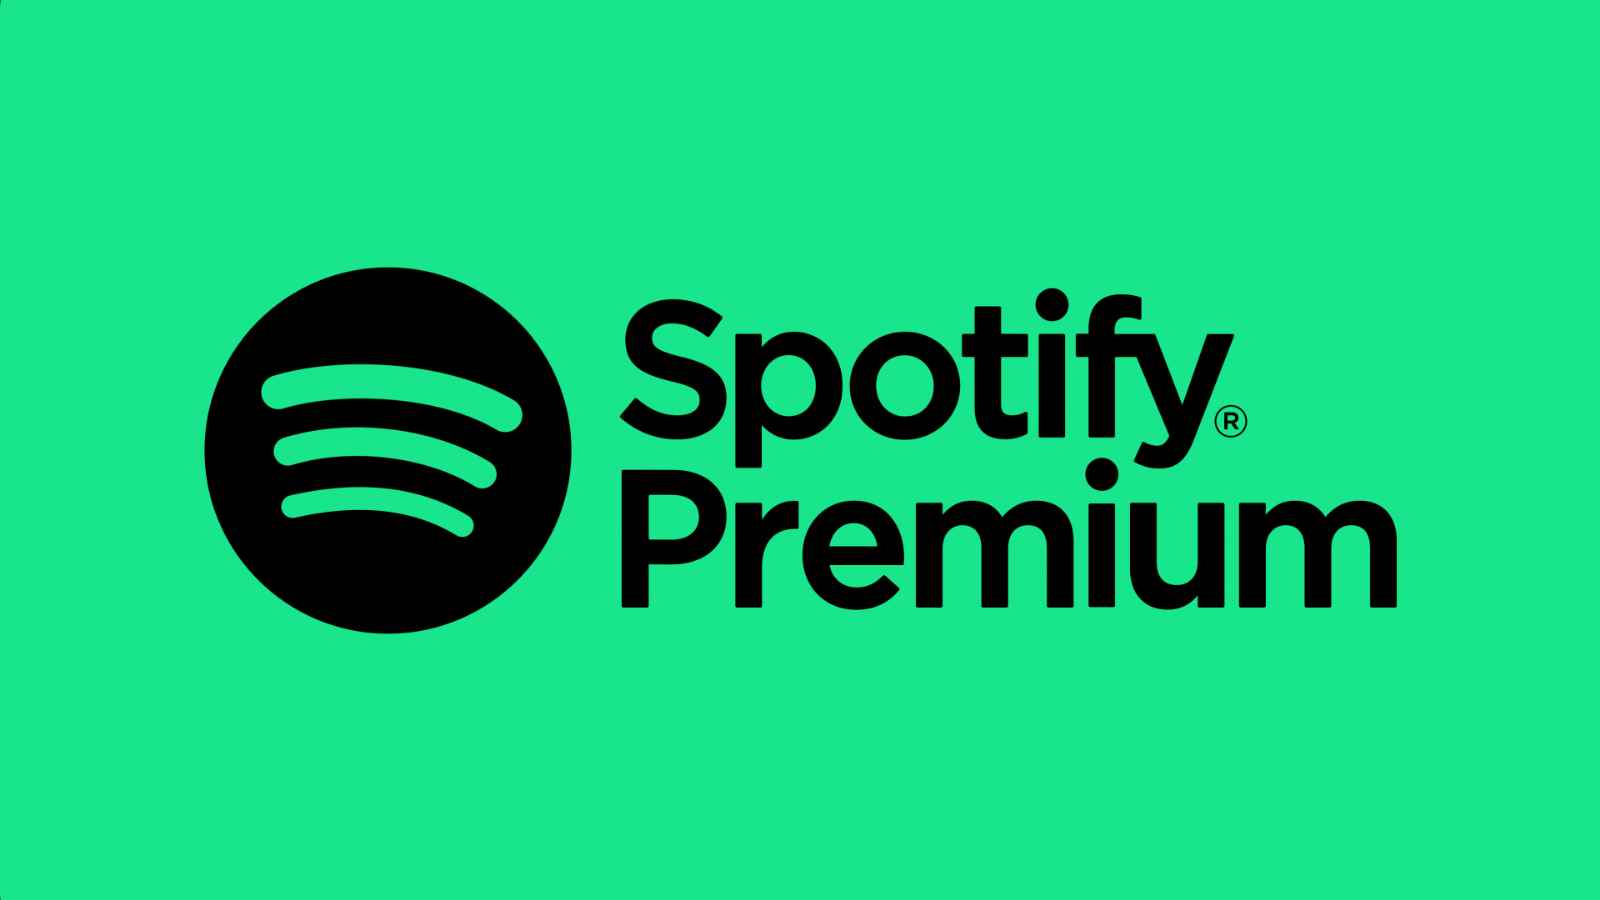 Siyah Spotify Premium markası